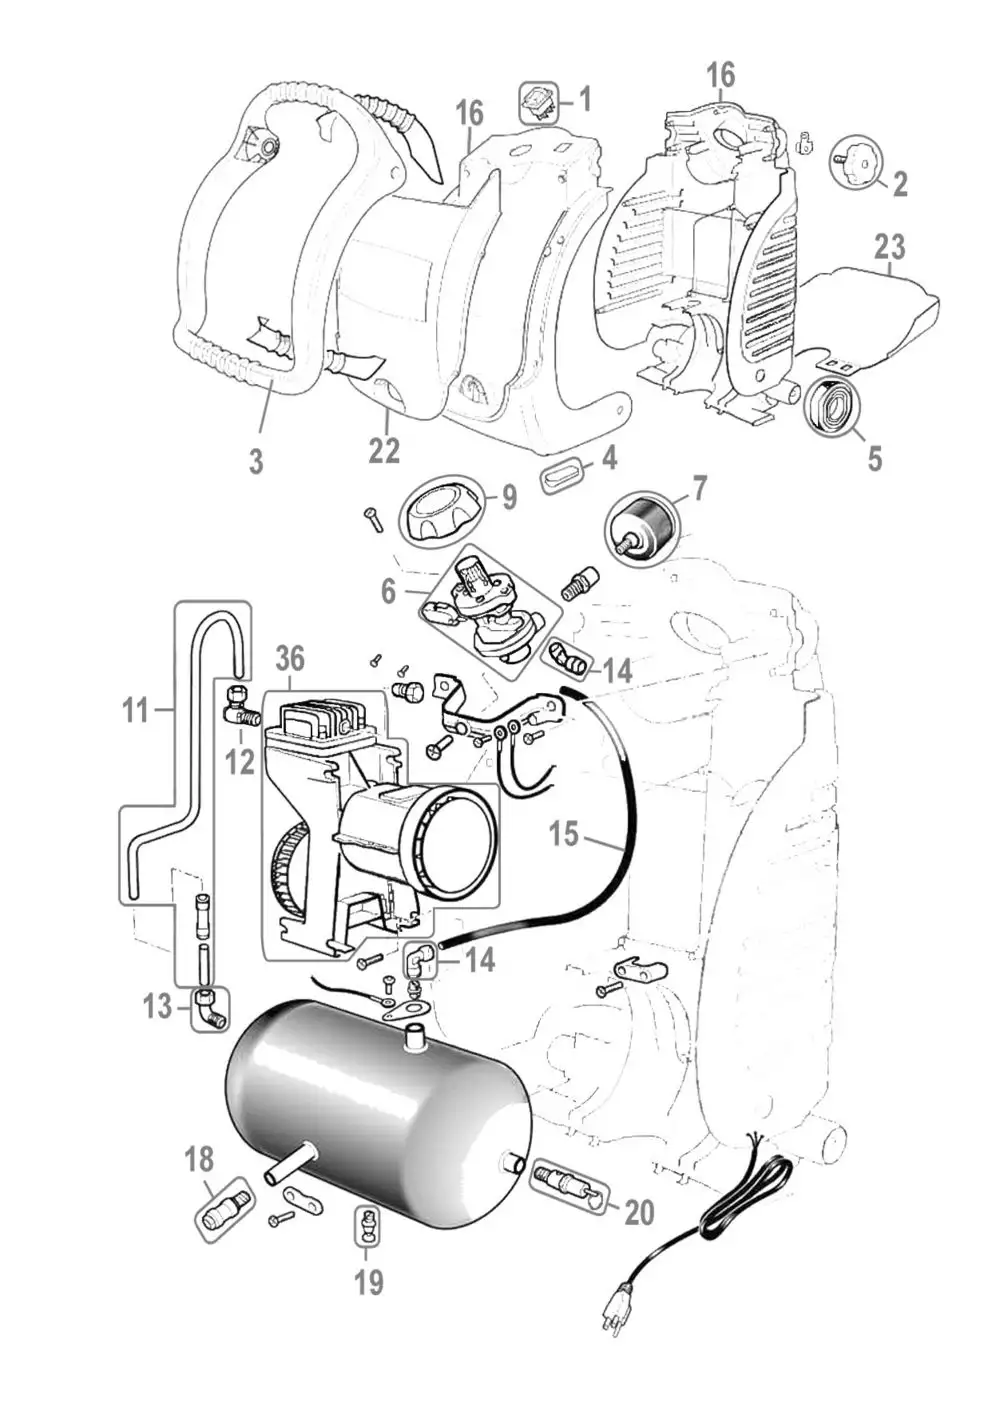 Zeichnung - Kompressor Airpower 205/09/5 - 50093